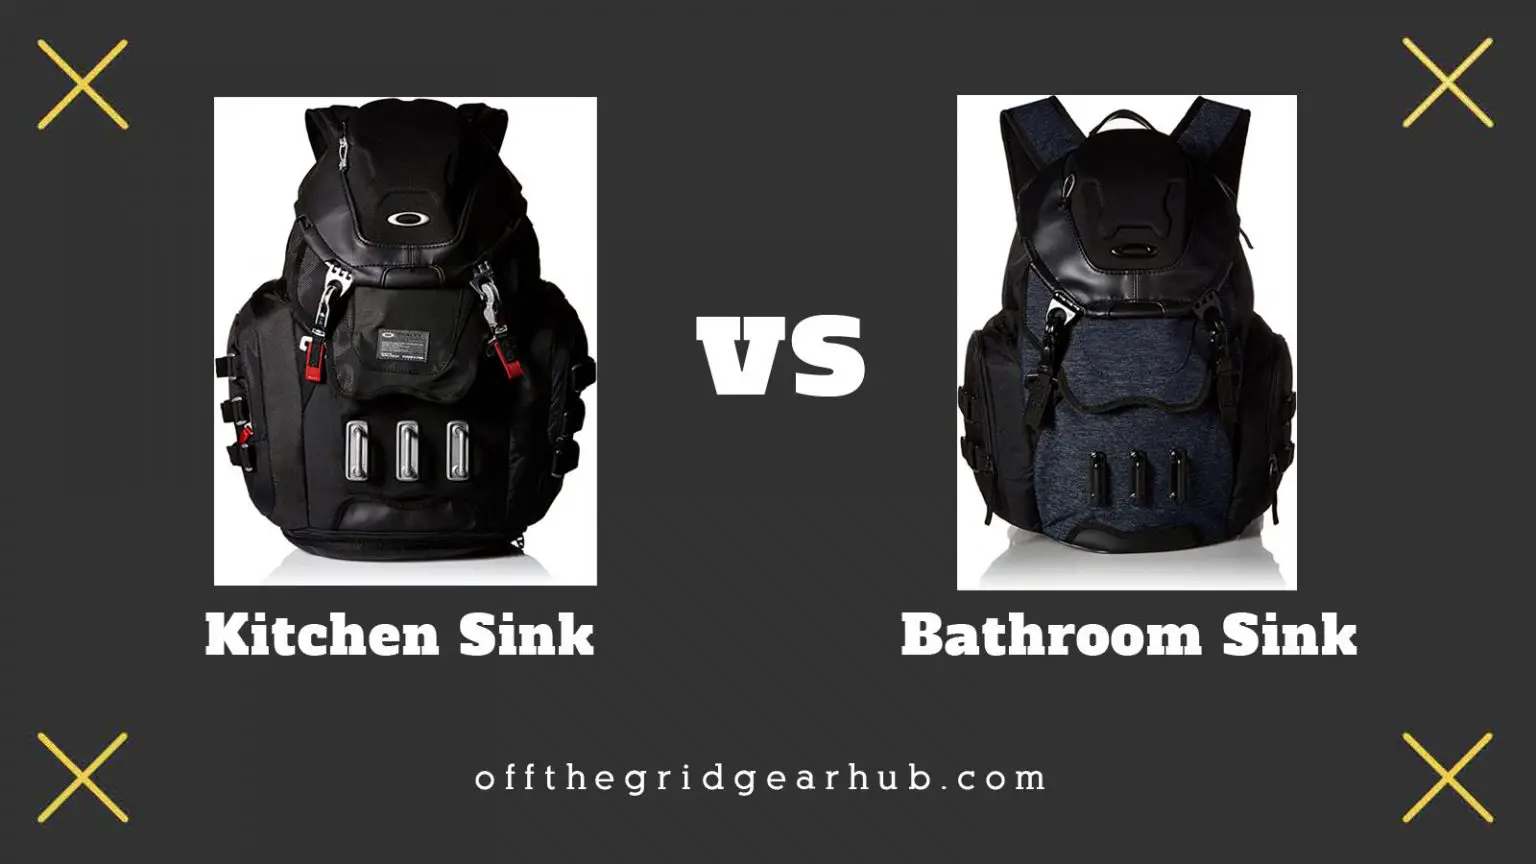 oakley gearbox lx vs kitchen sink